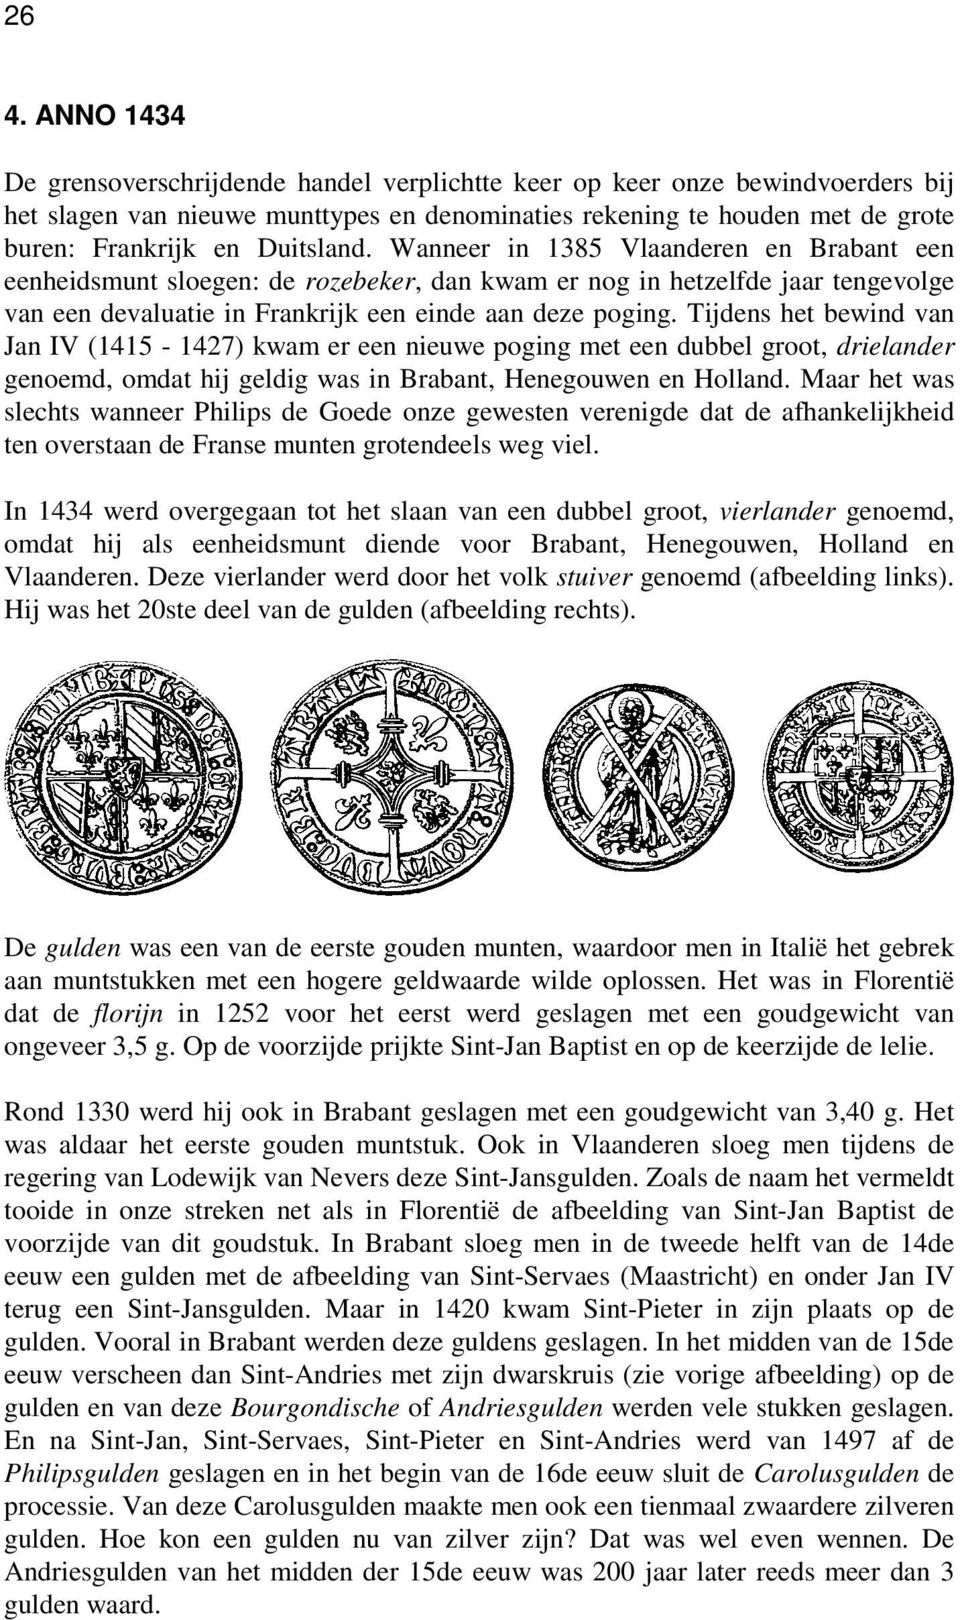 Tijdens het bewind van Jan IV (1415-1427) kwam er een nieuwe poging met een dubbel groot, drielander genoemd, omdat hij geldig was in Brabant, Henegouwen en Holland.